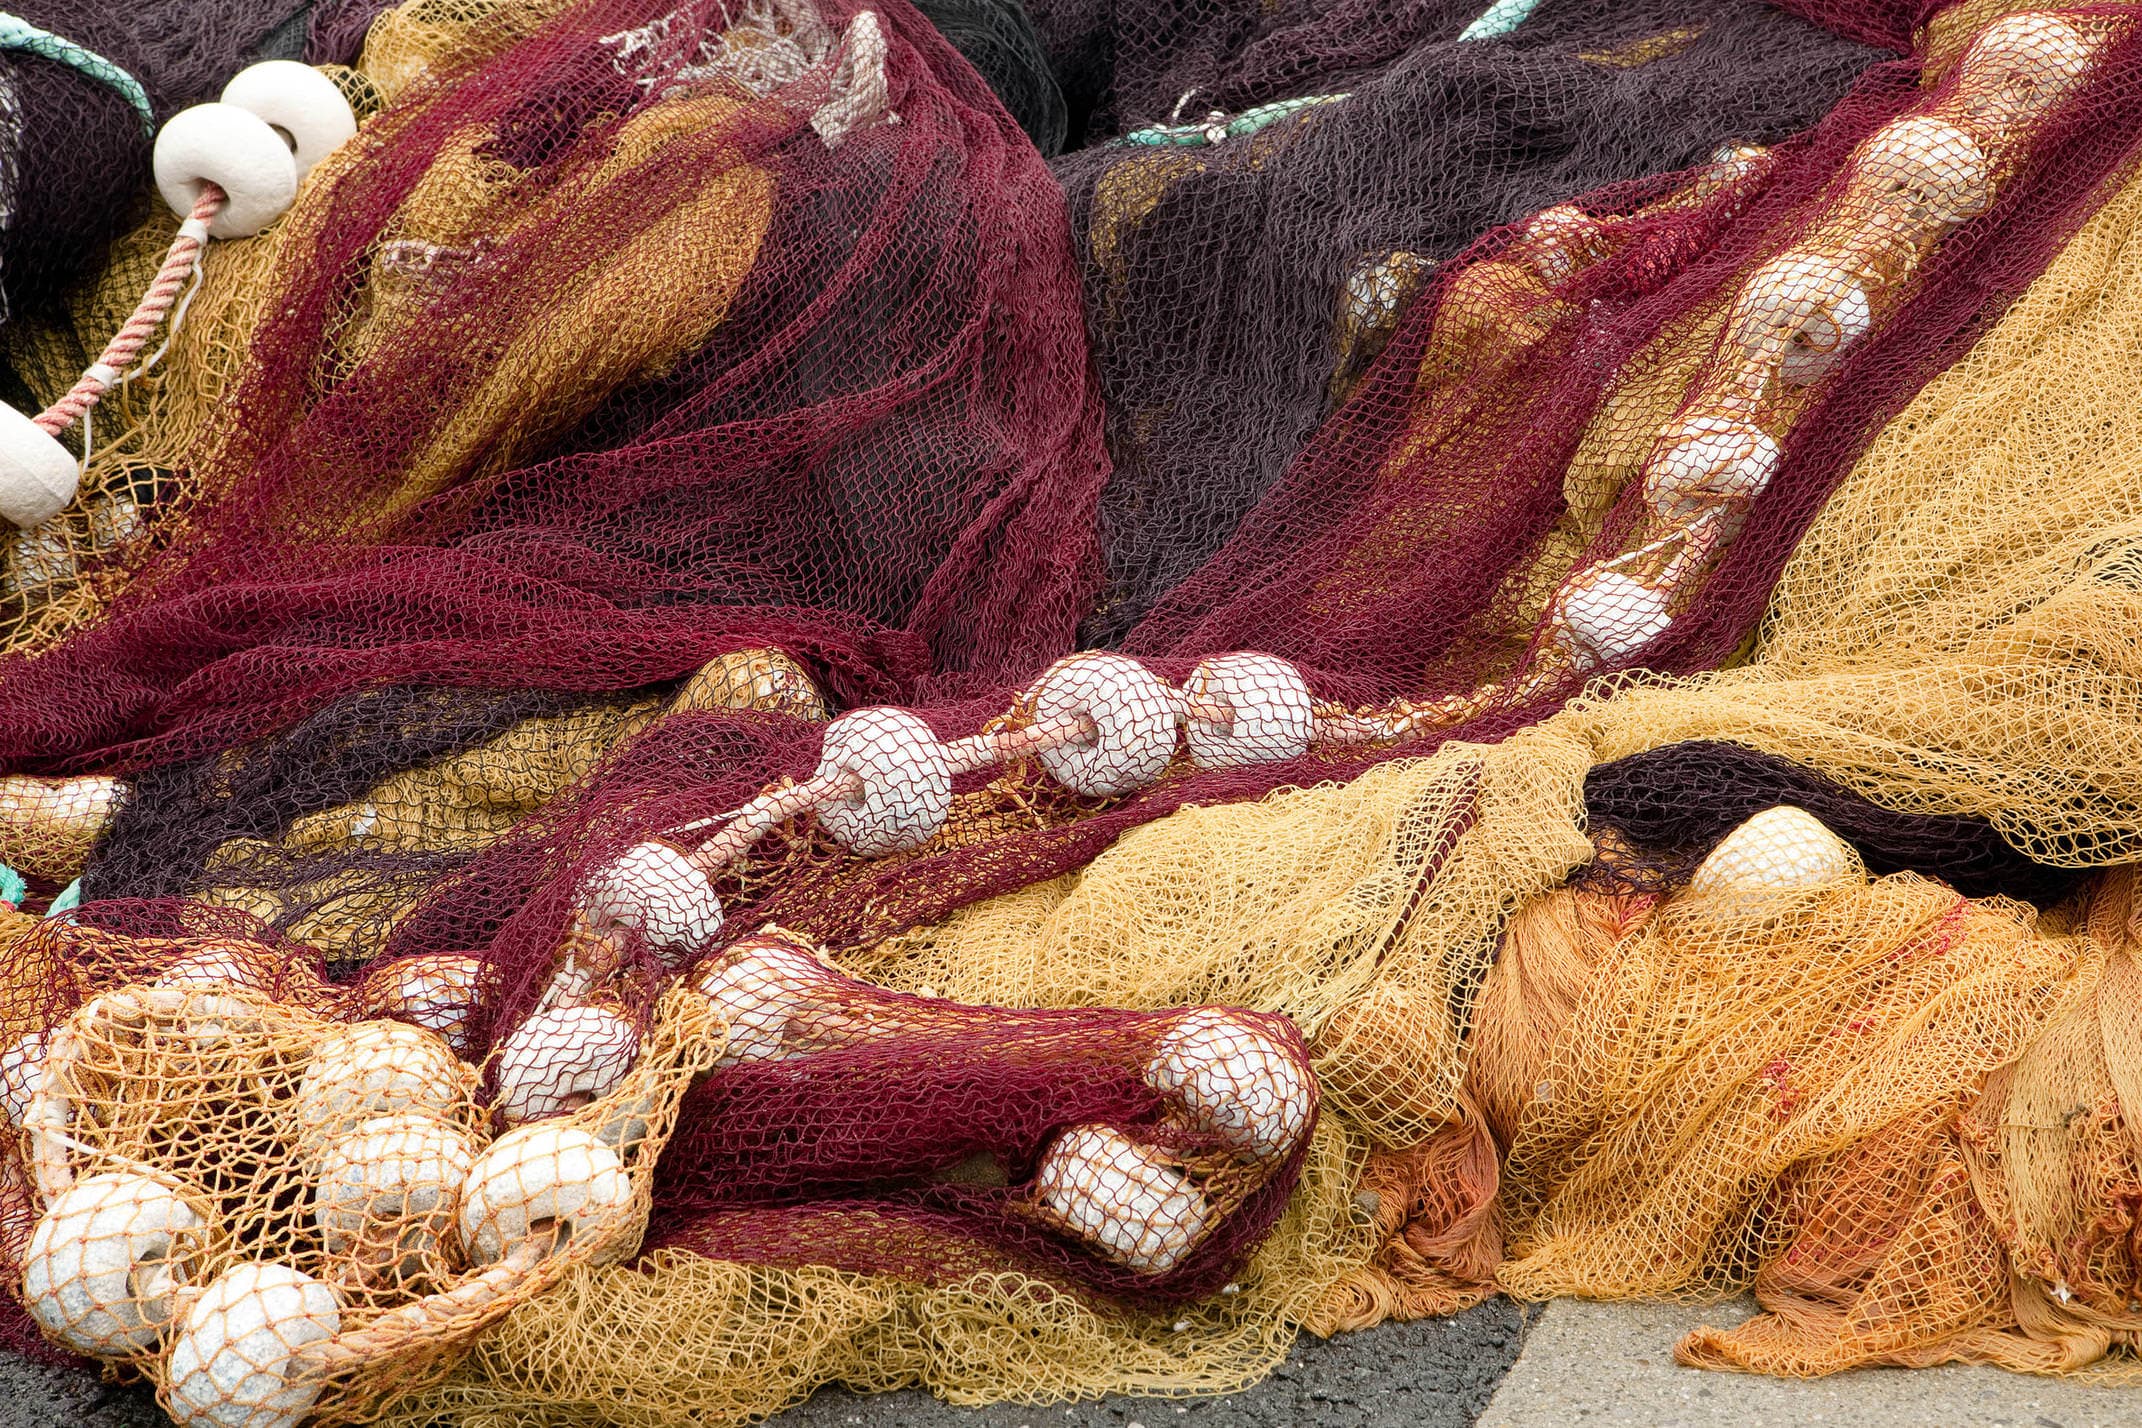 Spain basque country fishing nets c shutter